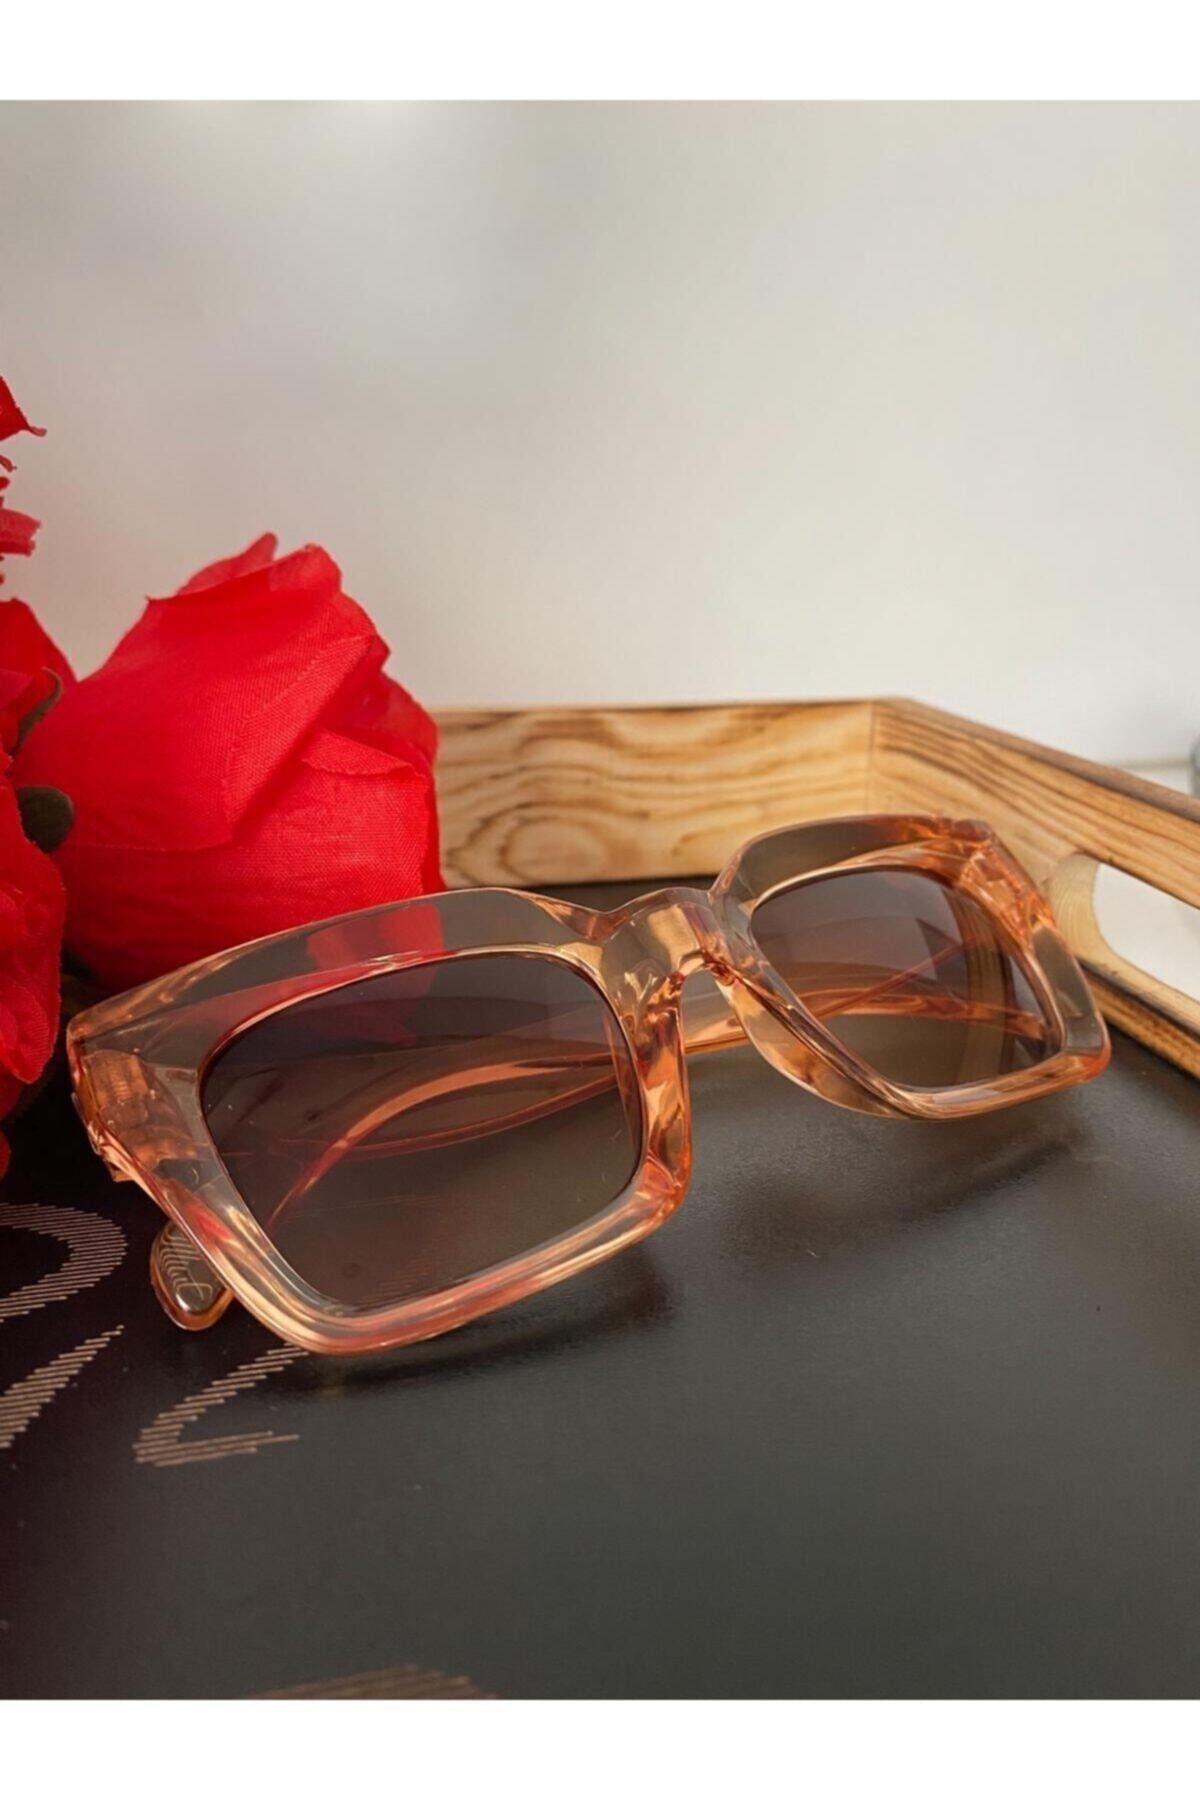 Mathilda Aksesuar Mia Kalın Çerçeveli Tasarım Gözlük Bal Çerçeve Kahve Cam